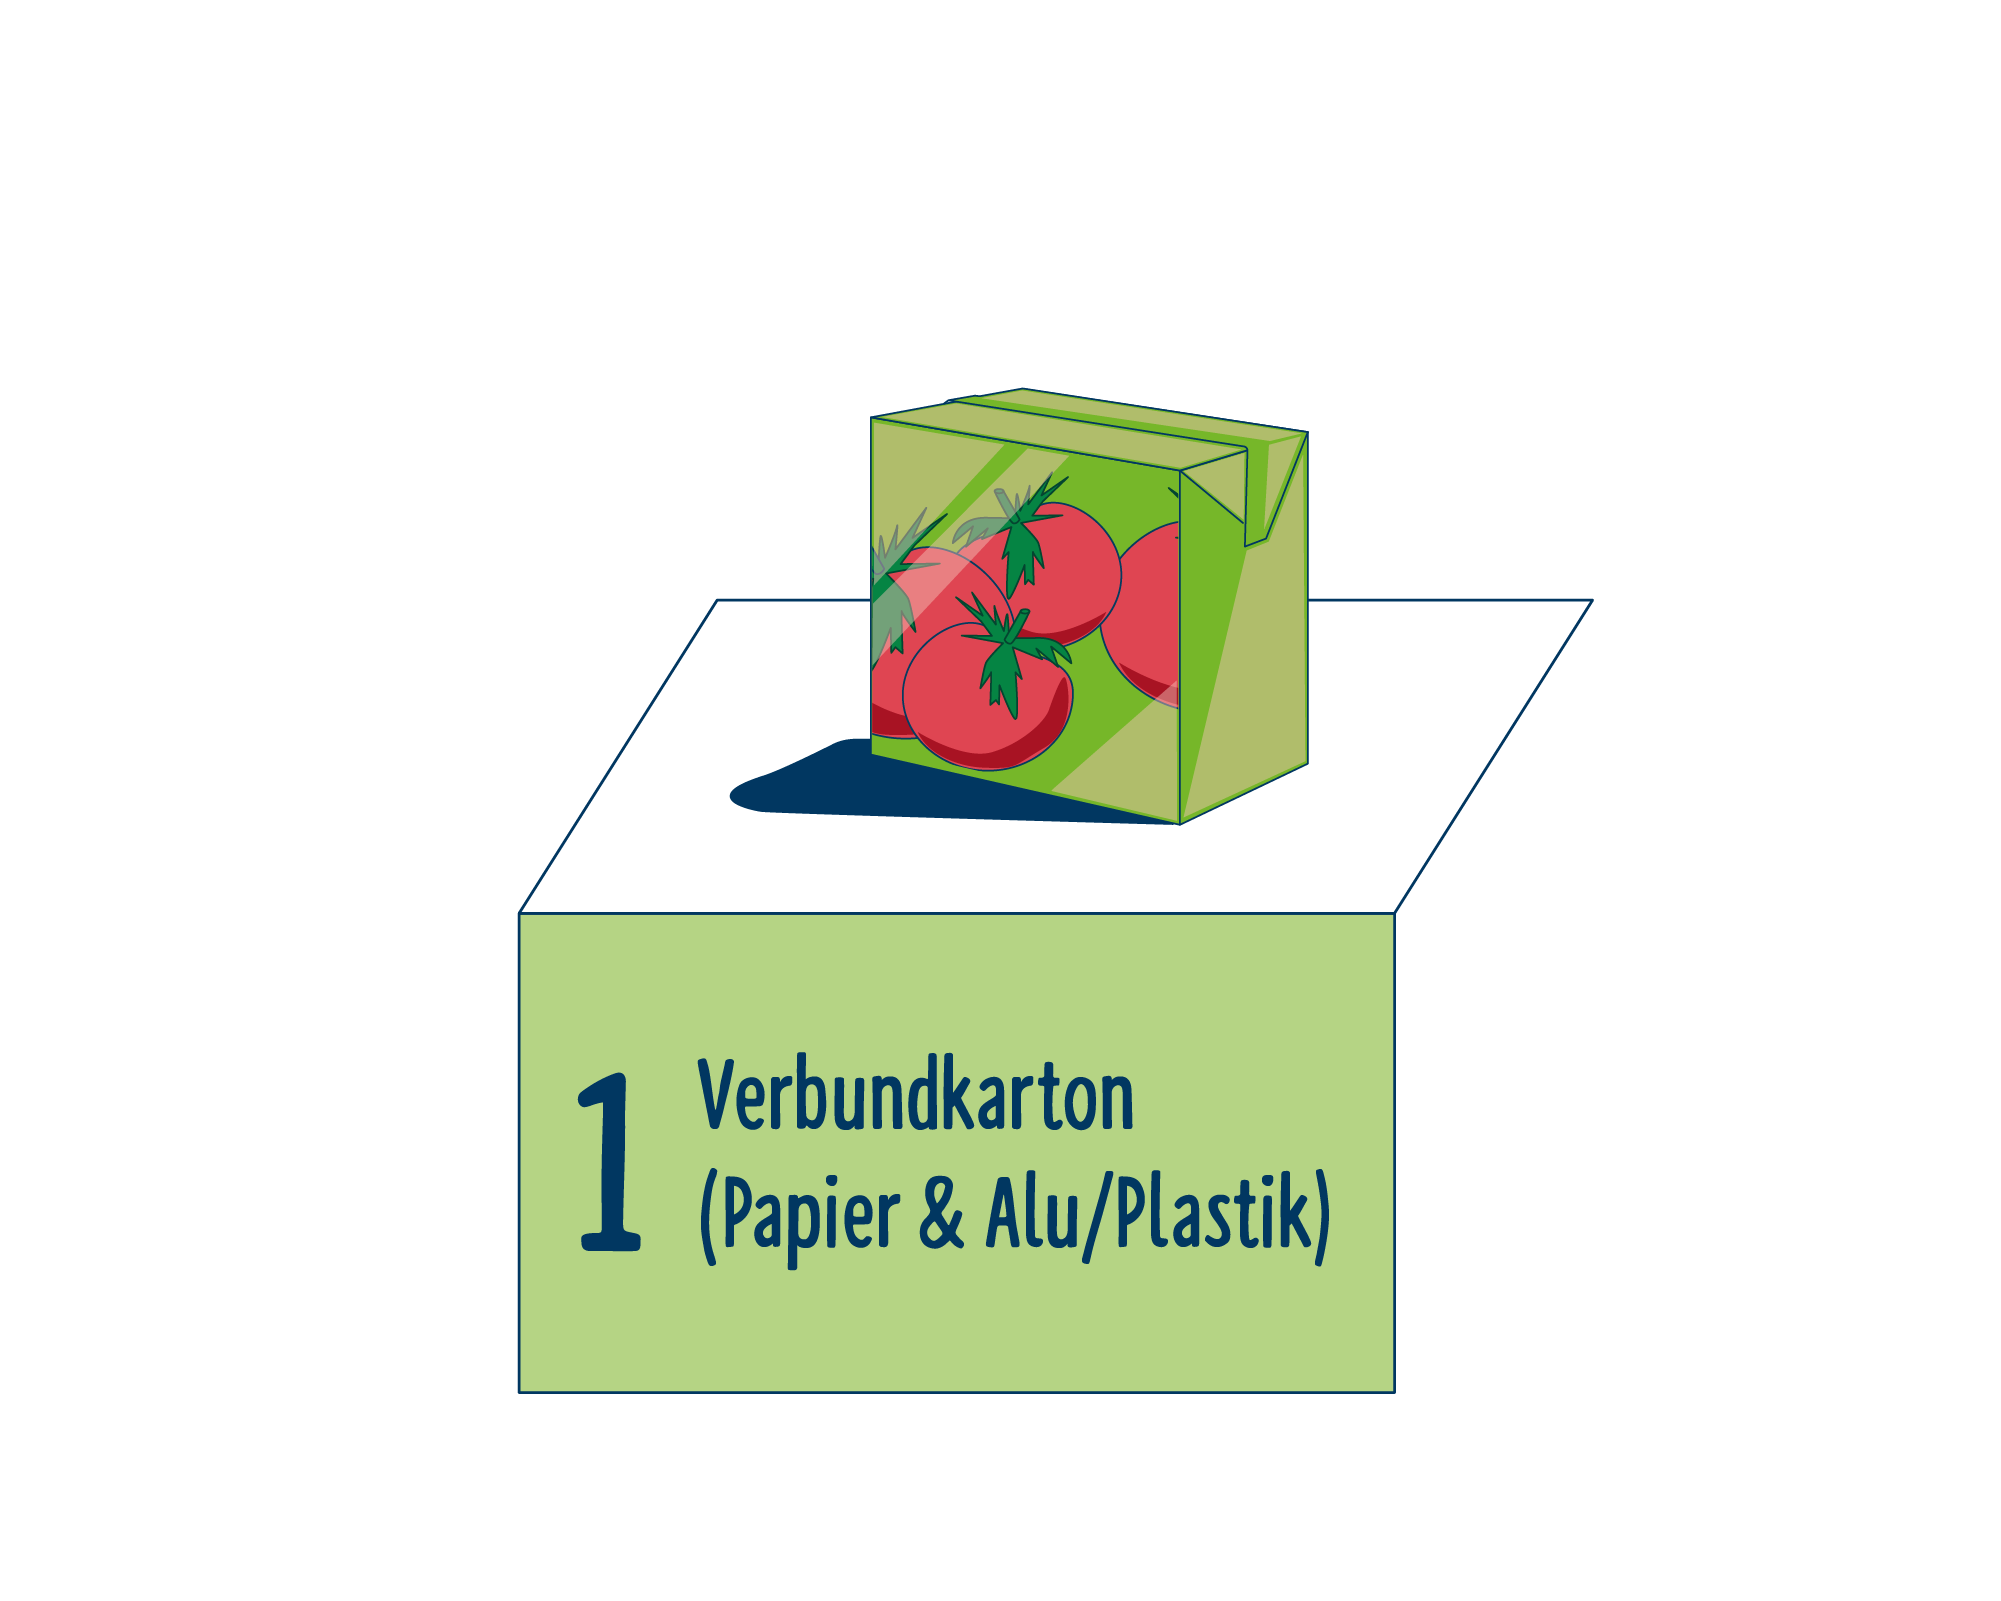 Bild Produktverpackung von Verarbeitete Tomaten eingeordnet auf Platz 1, bestehend aus Verbundkarton (Papier & Alu / Plastik).